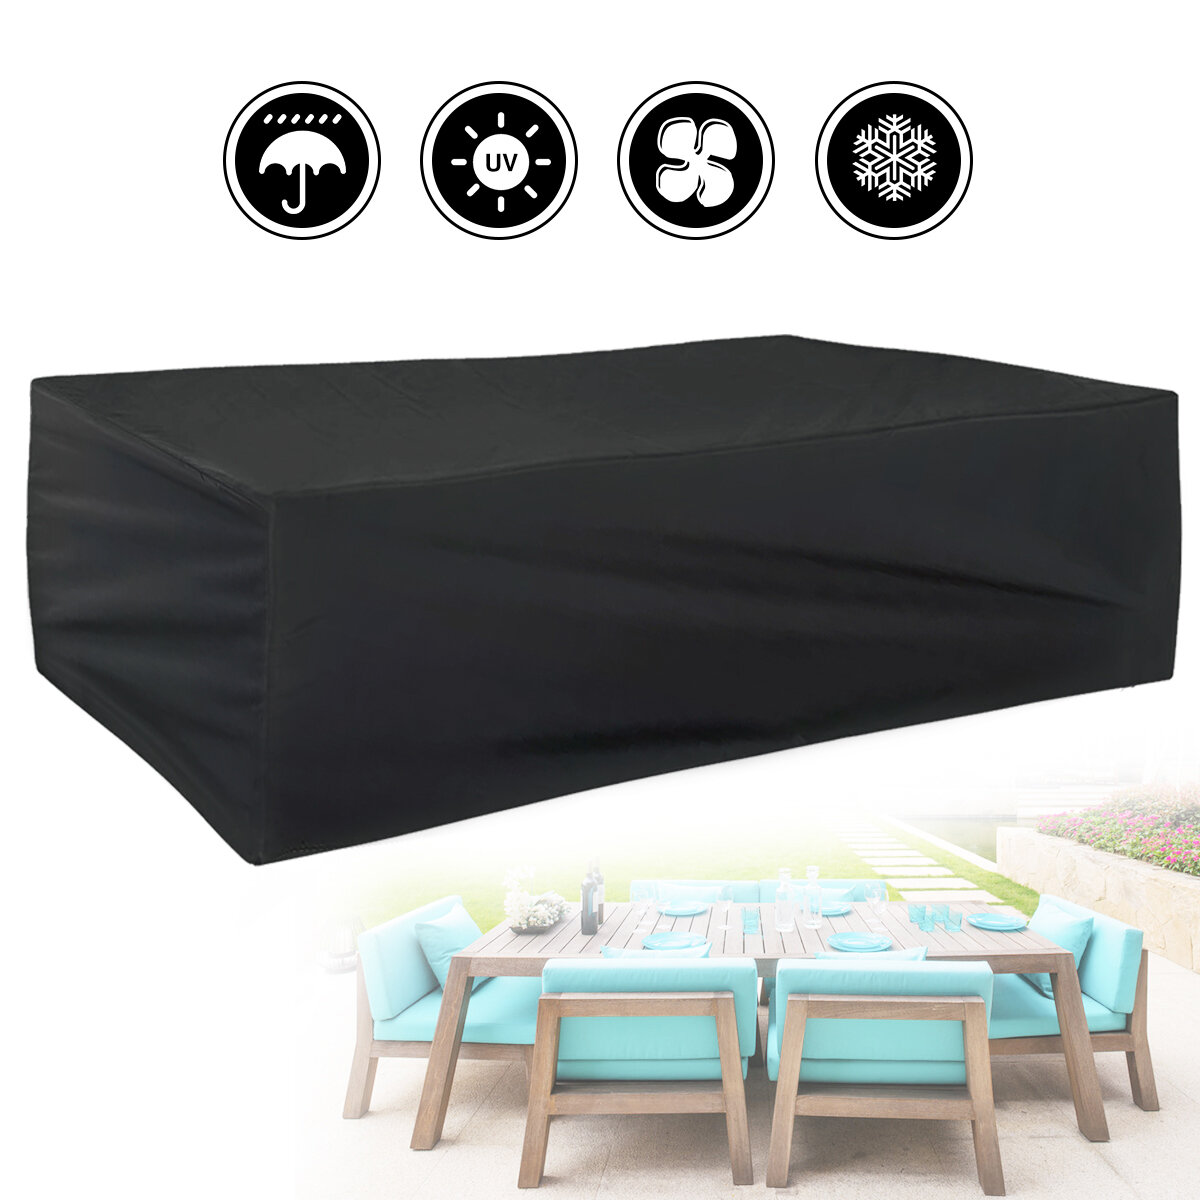 Housse de protection pour meubles de camping en polyester 420D imperméable, protège chaises, tables, canapés et fauteuils contre la poussière et la saleté dans le jardin, sur la terrasse ou en camping.